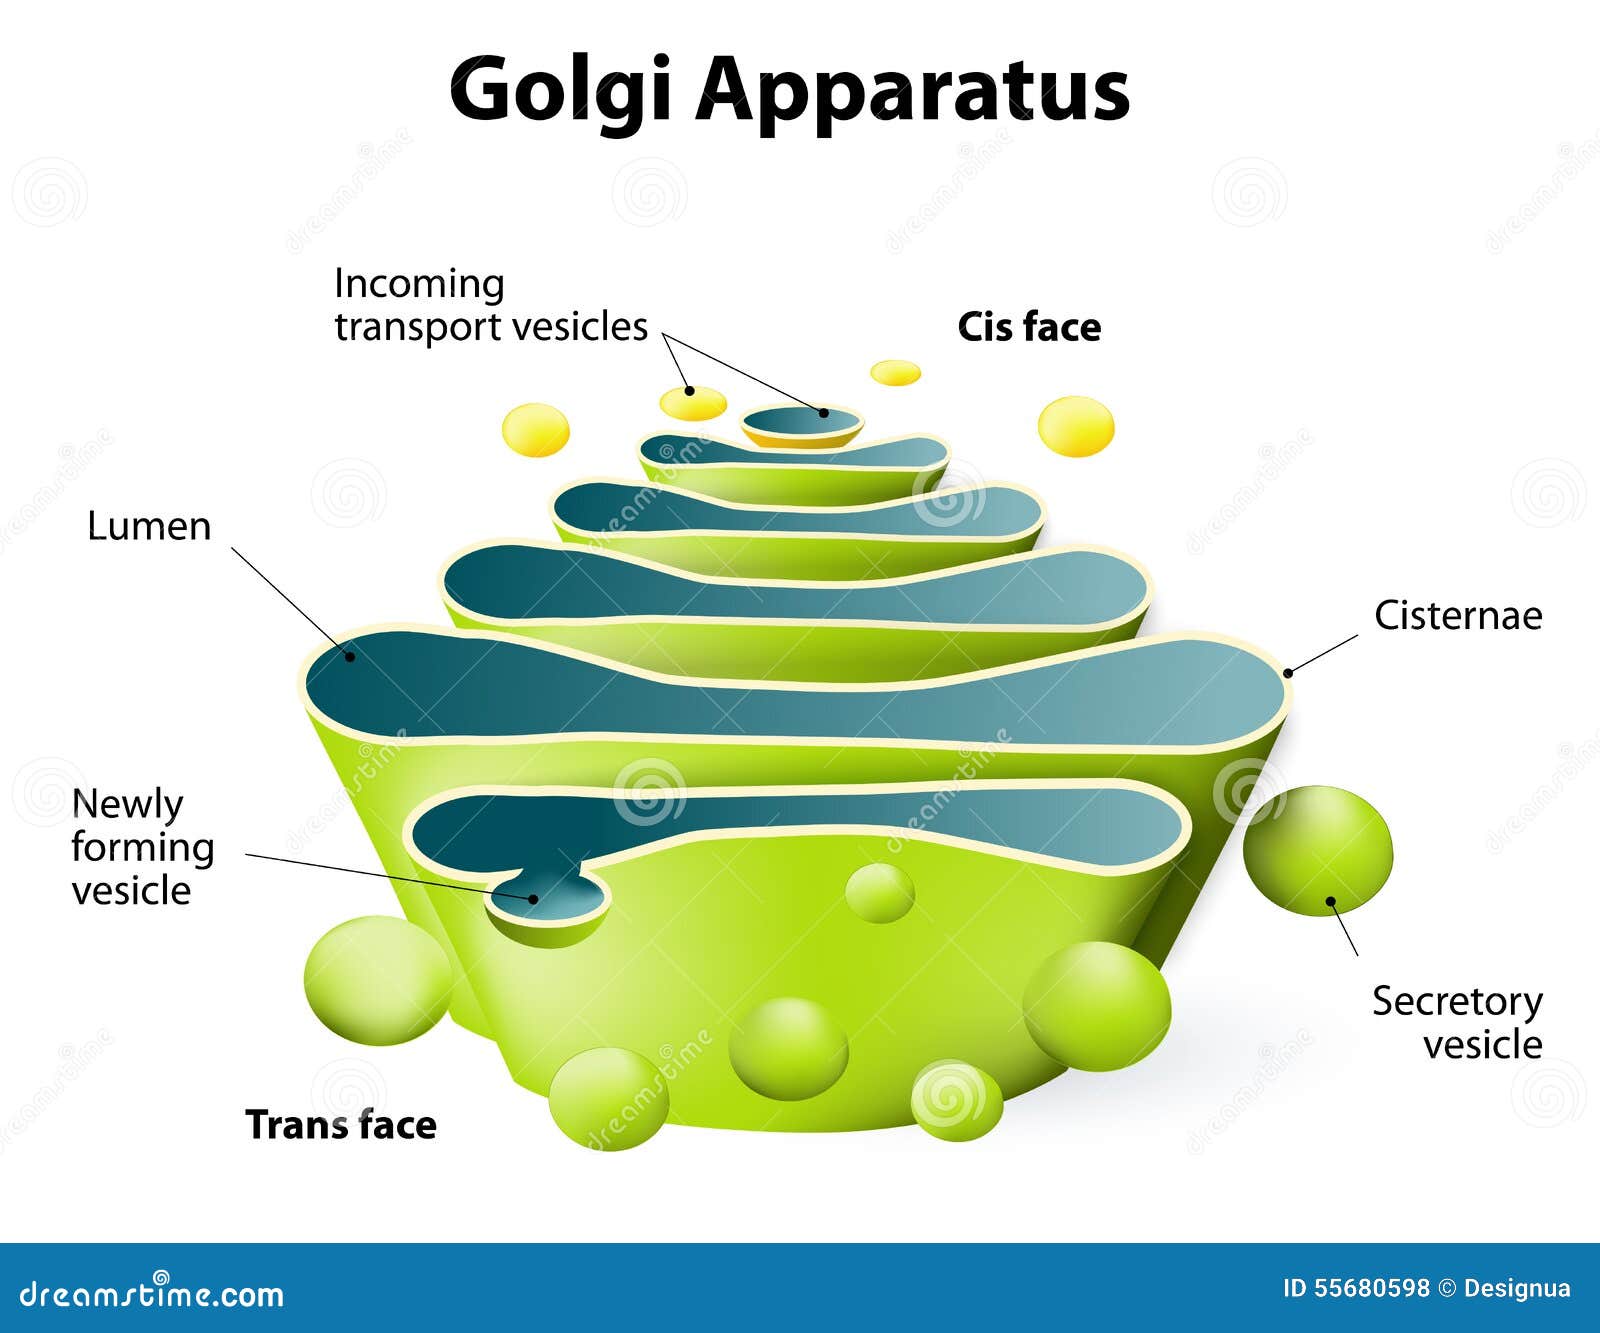 golgi apparatus or golgi body